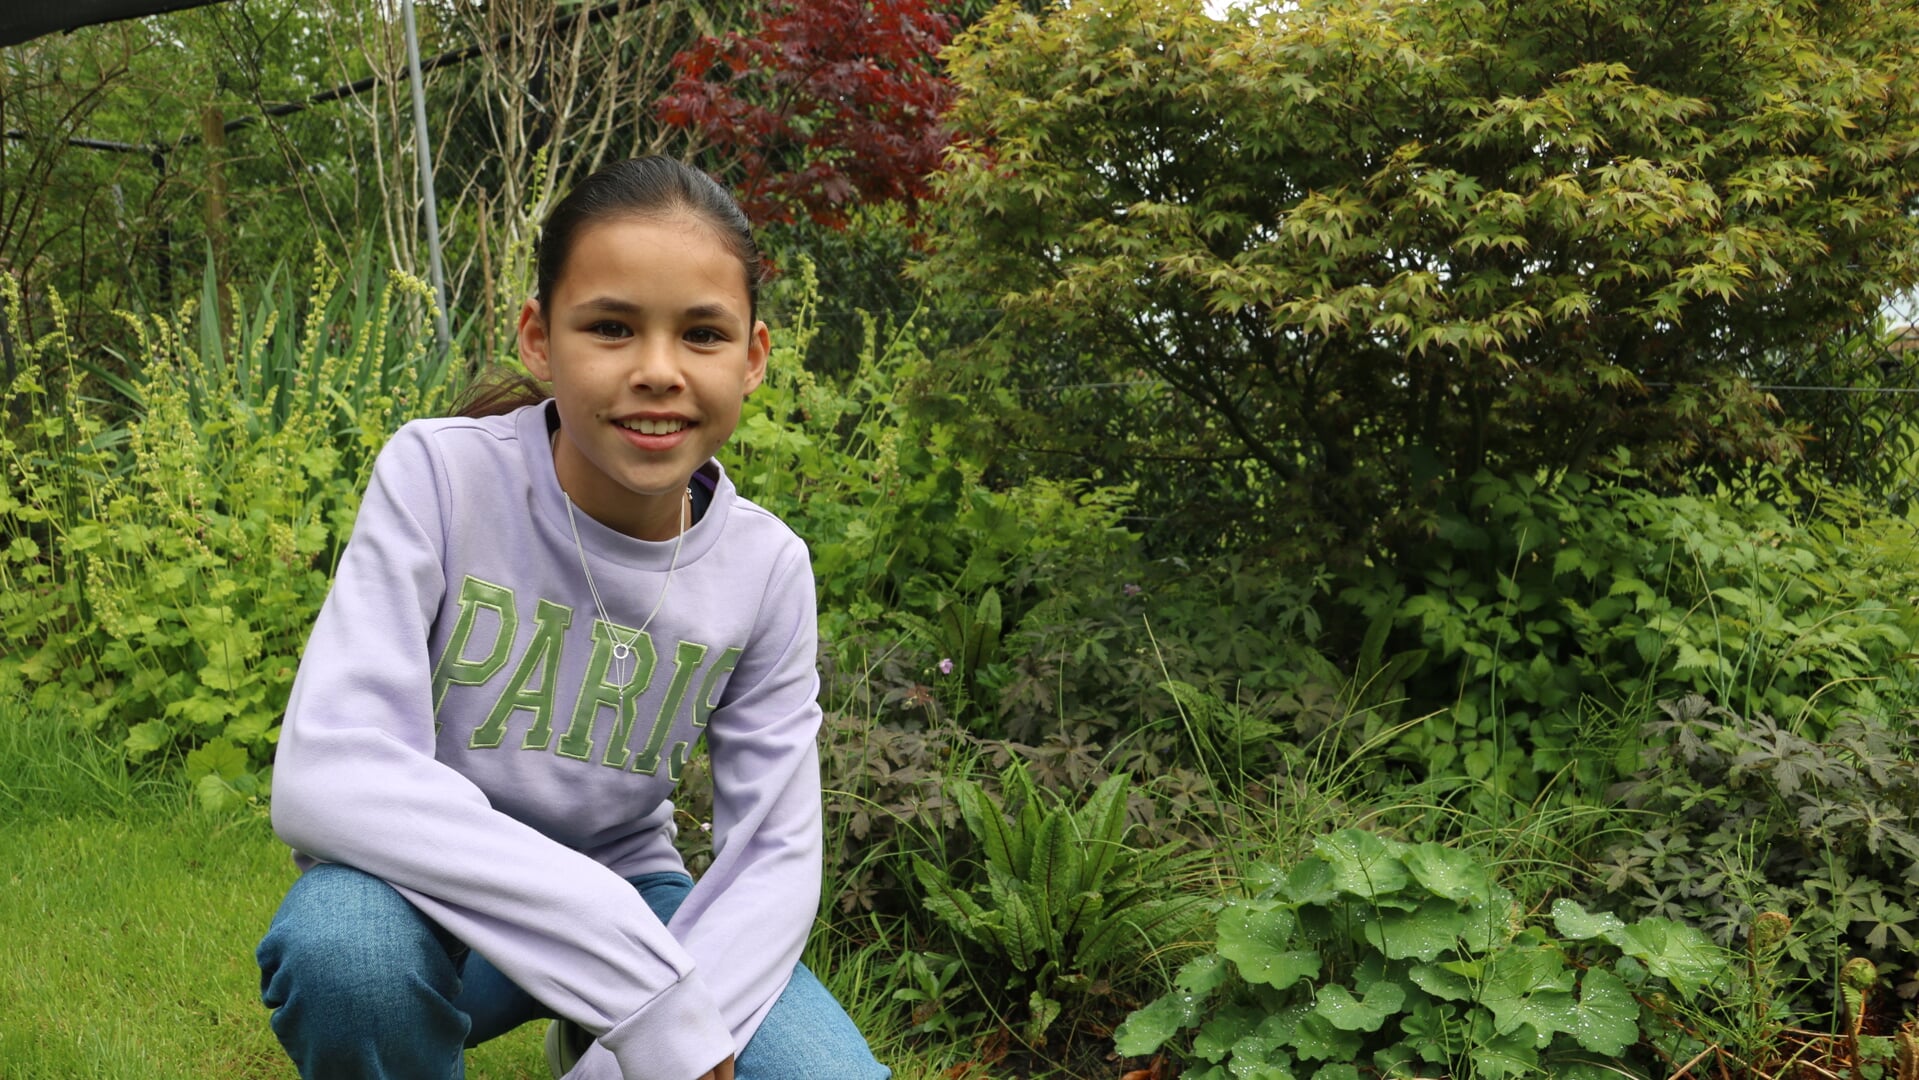 De 12-jarige Sylvia Luu wordt in haar dorp Welberg al het egelmeisje genoemd. Haar missie om de gemeente egelvriendelijker te maken heeft nu ook de lokale politiek bereikt.